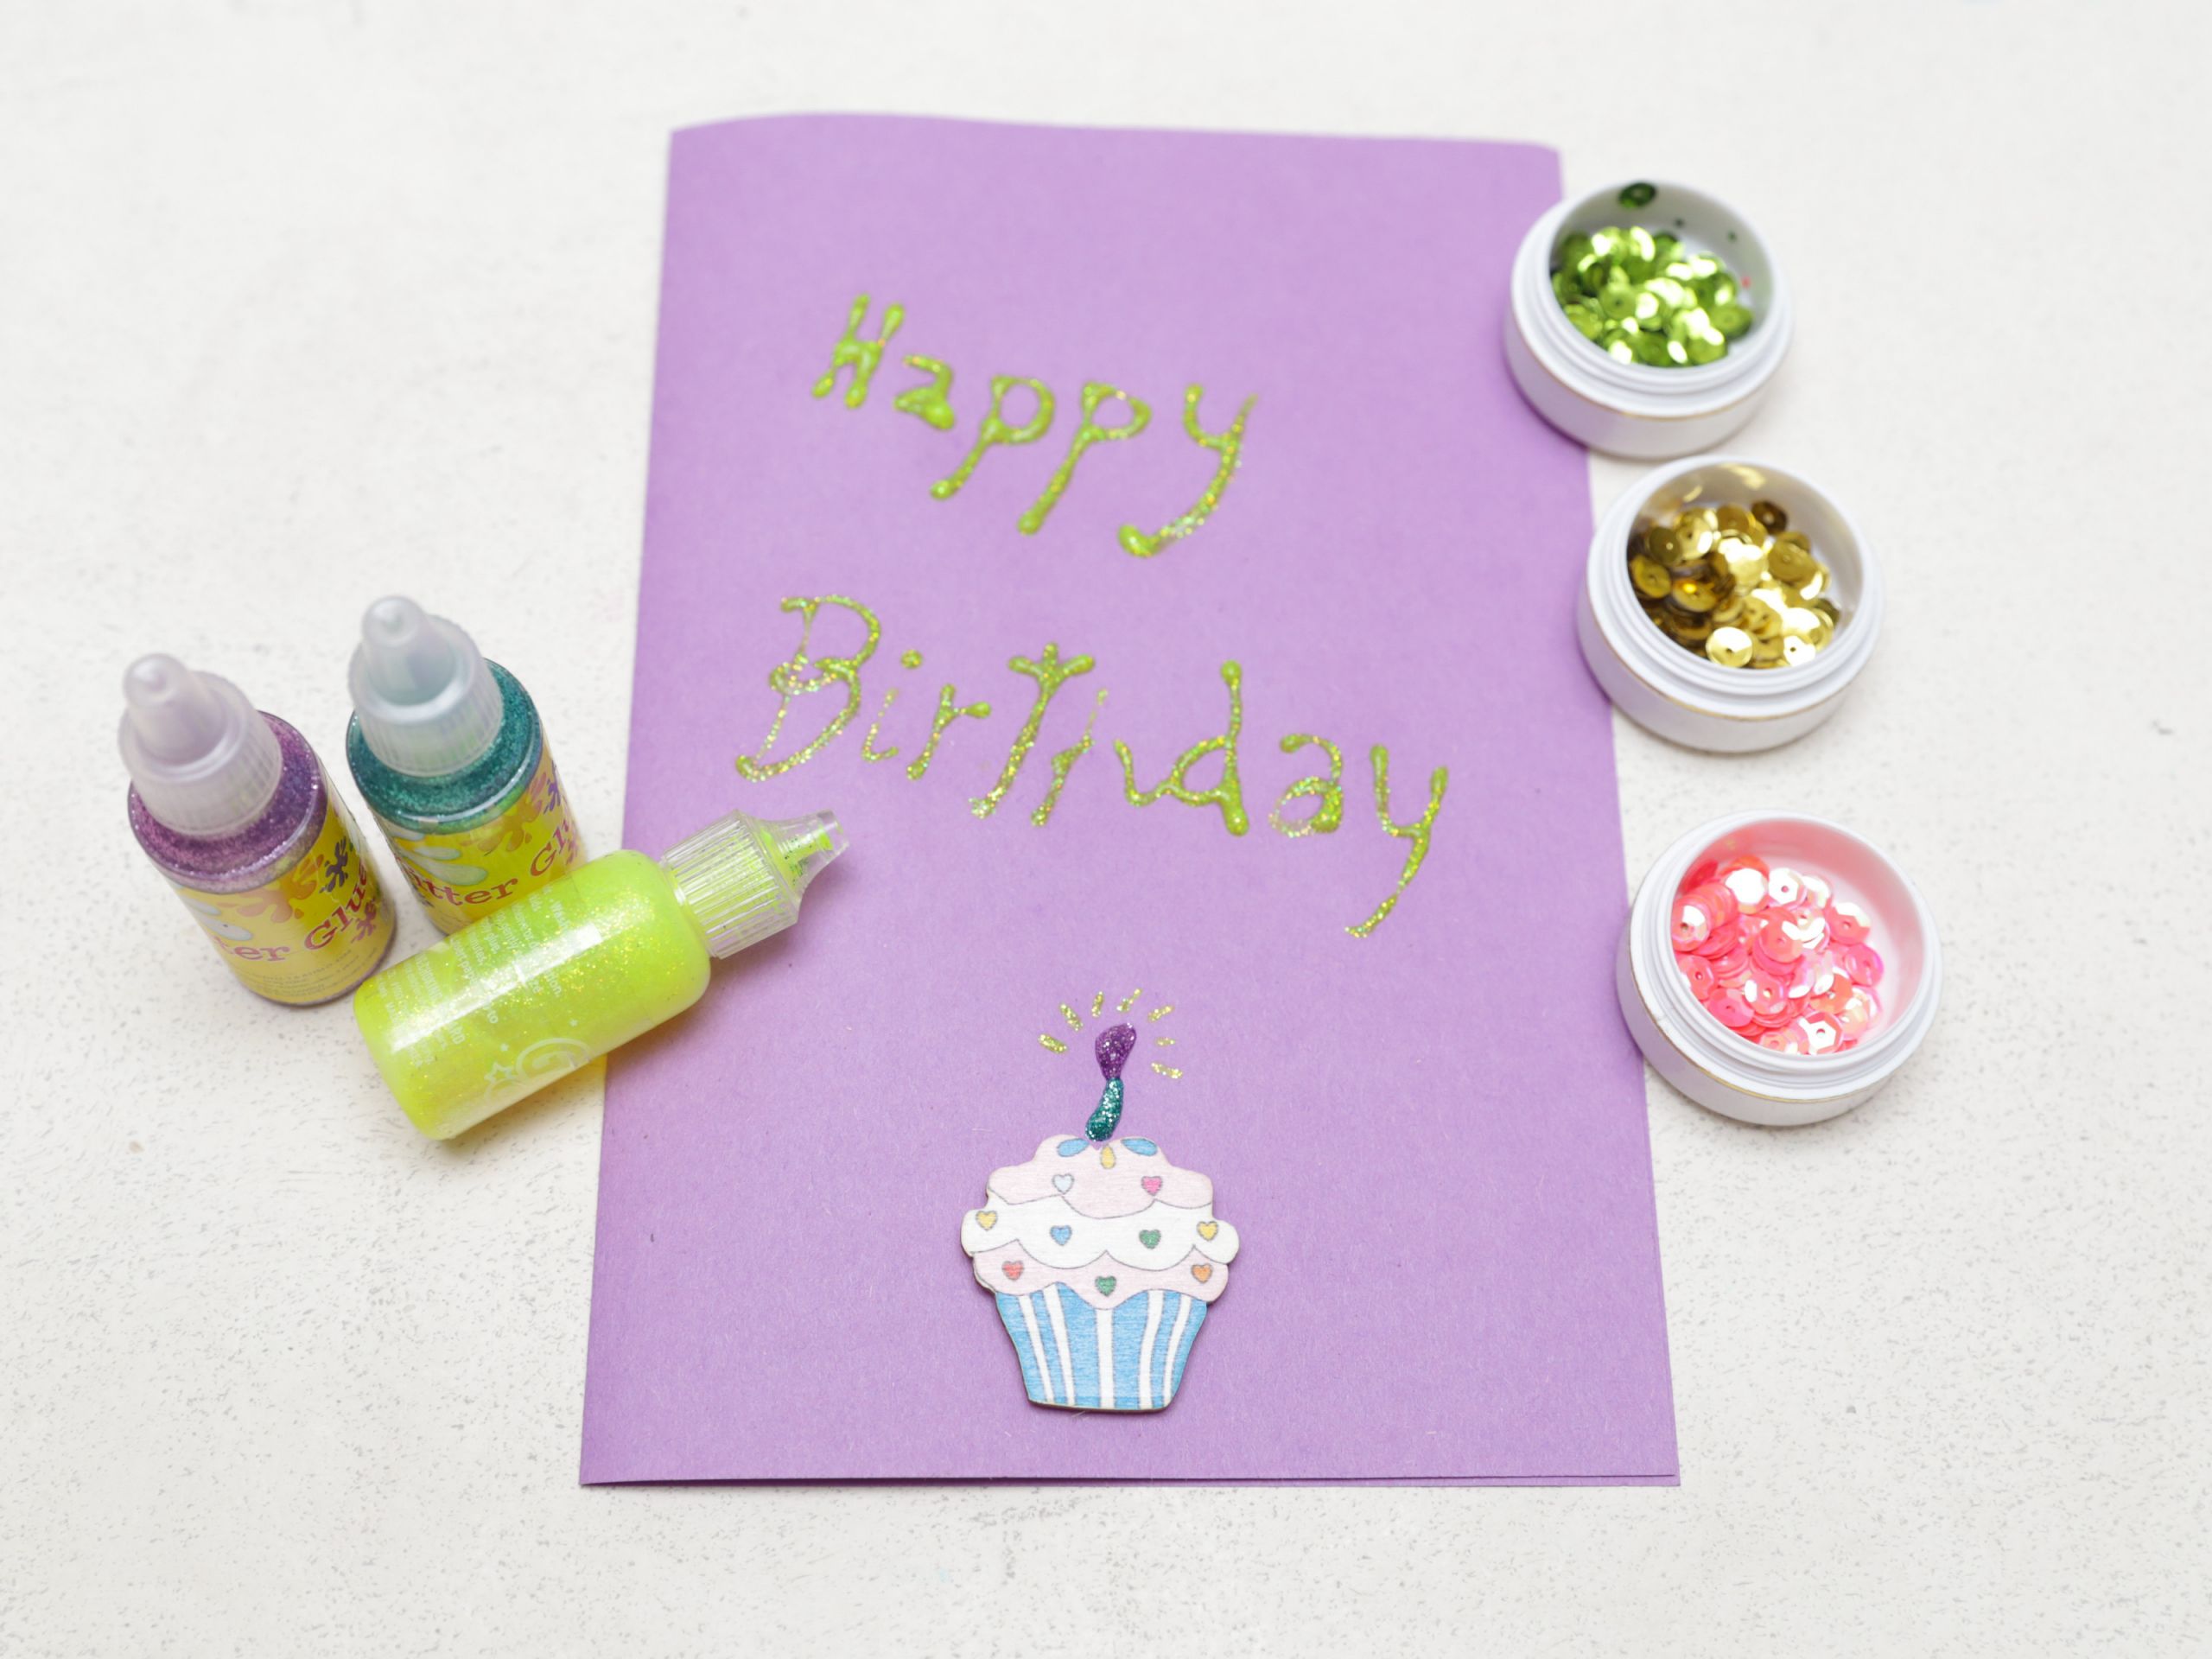 Make A Birthday Card
 How to Make a Simple Handmade Birthday Card 15 Steps